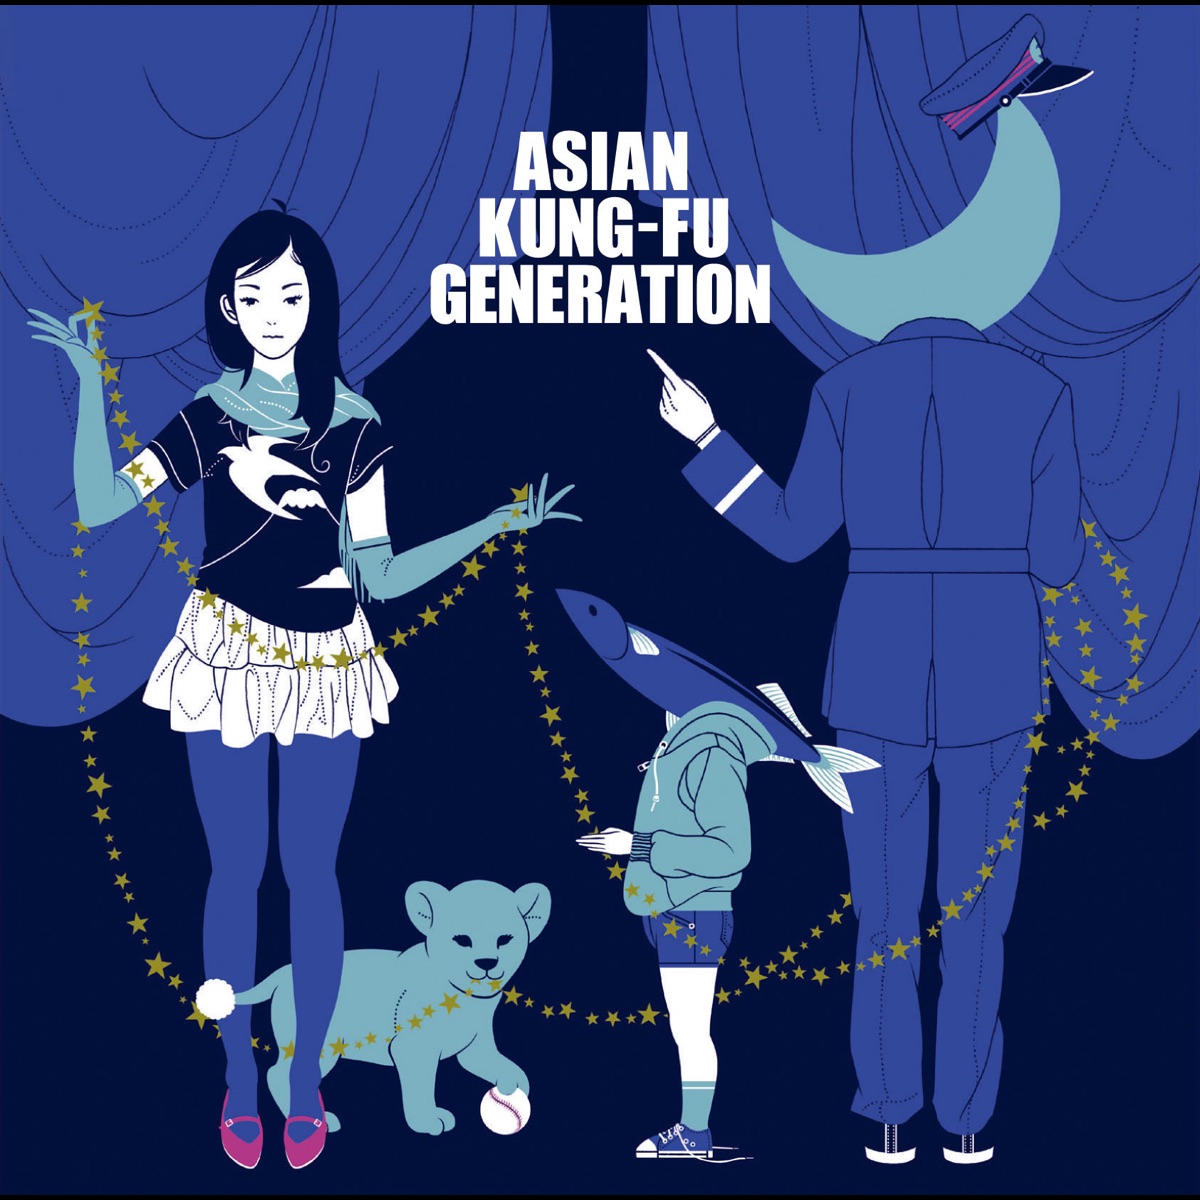 『ASIAN KUNG-FU GENERATION - ブルートレイン 歌詞』収録の『ブルートレイン』ジャケット